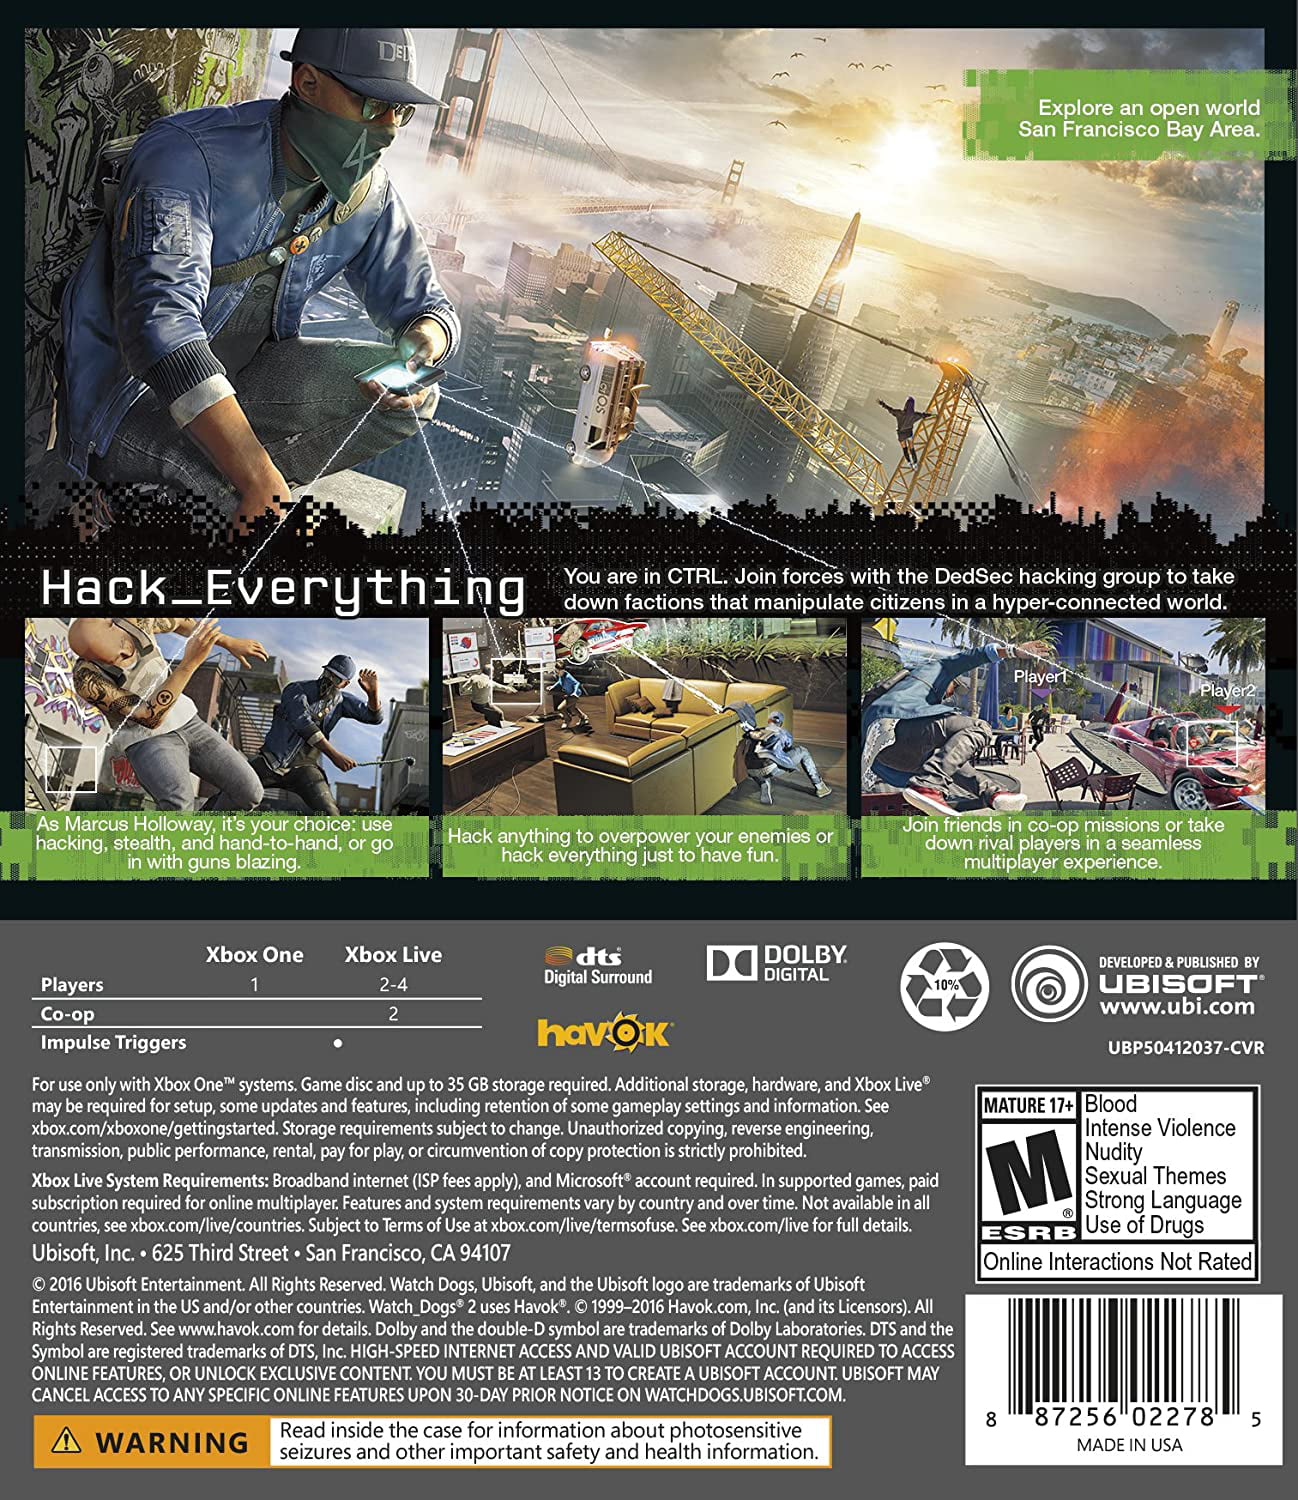 Niet genoeg paniek bovenste Watch Dogs 2, Ubisoft, Xbox One, 887256022792 - Walmart.com